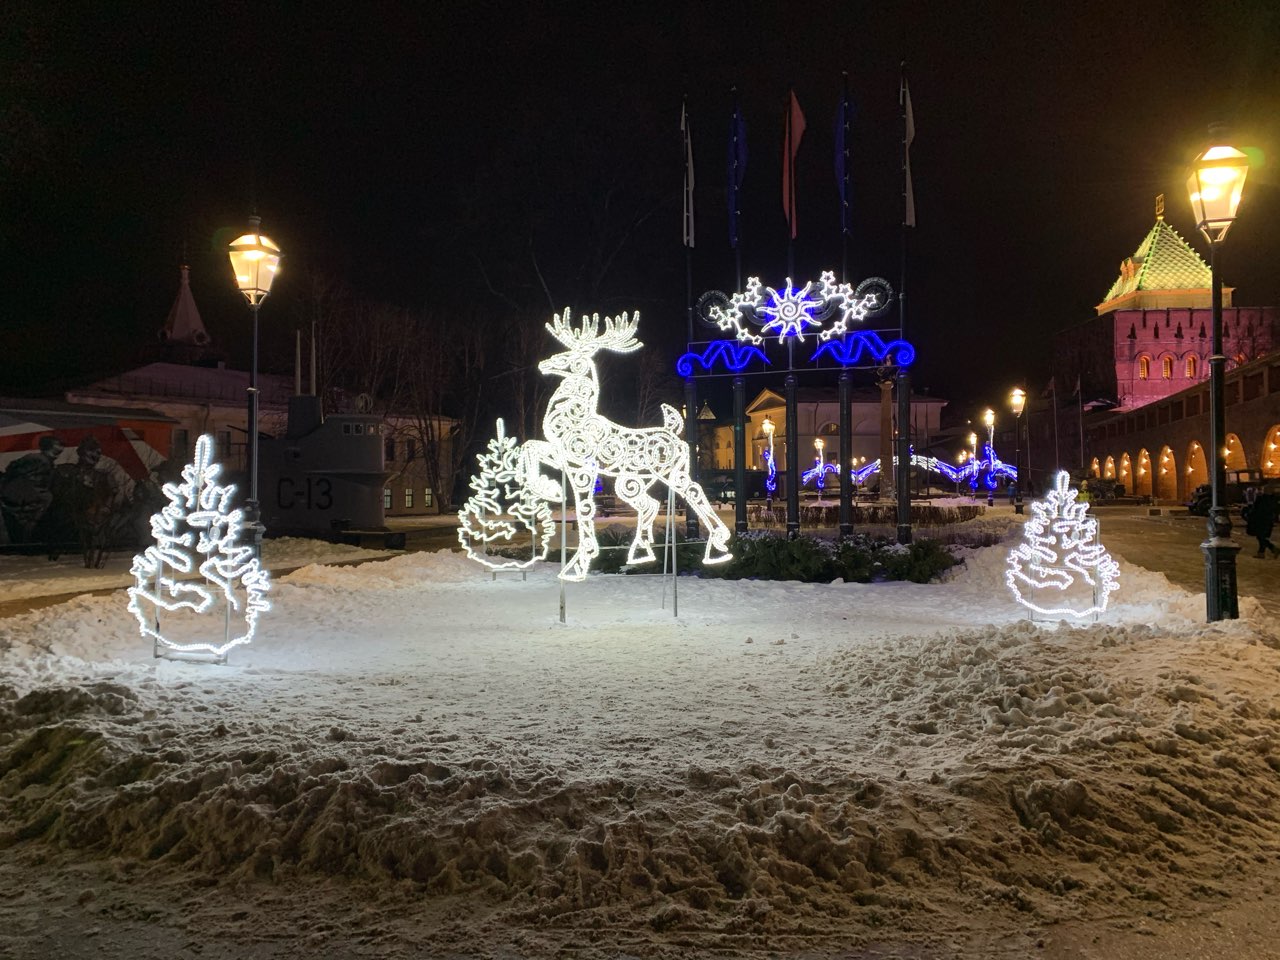 15 локаций определили для зимний праздников в Нижнем Новгороде - фото 1